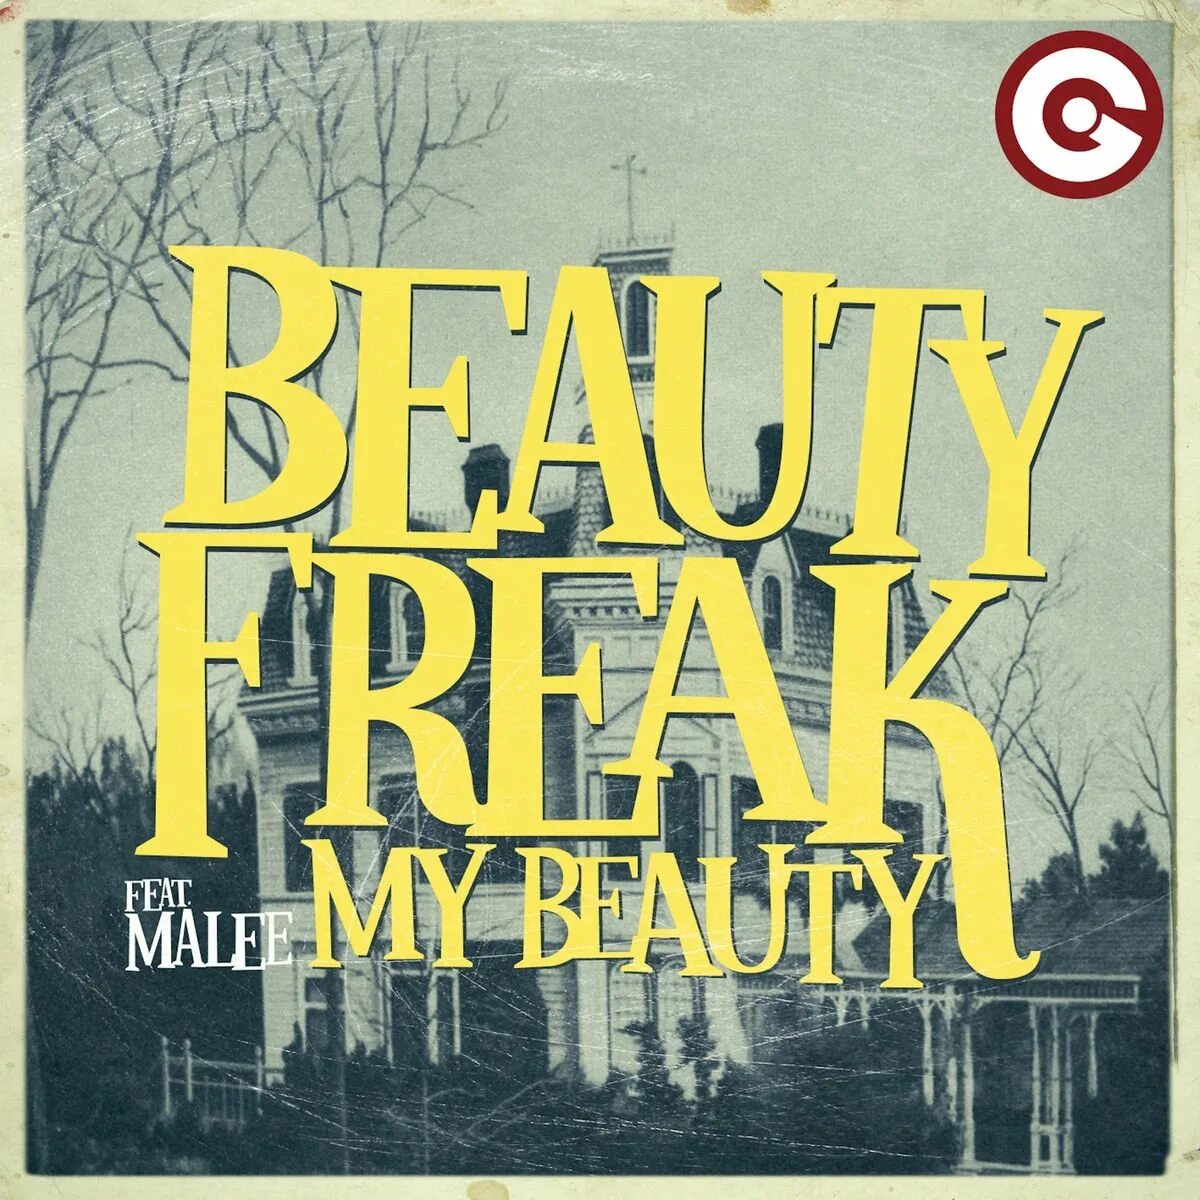 Beauty Freak. Группа Beauty Freak. My Beauty Paris-Verneuil Mix  — Beauty Freak, Malee. Beauty Freak перевод. My beautiful song